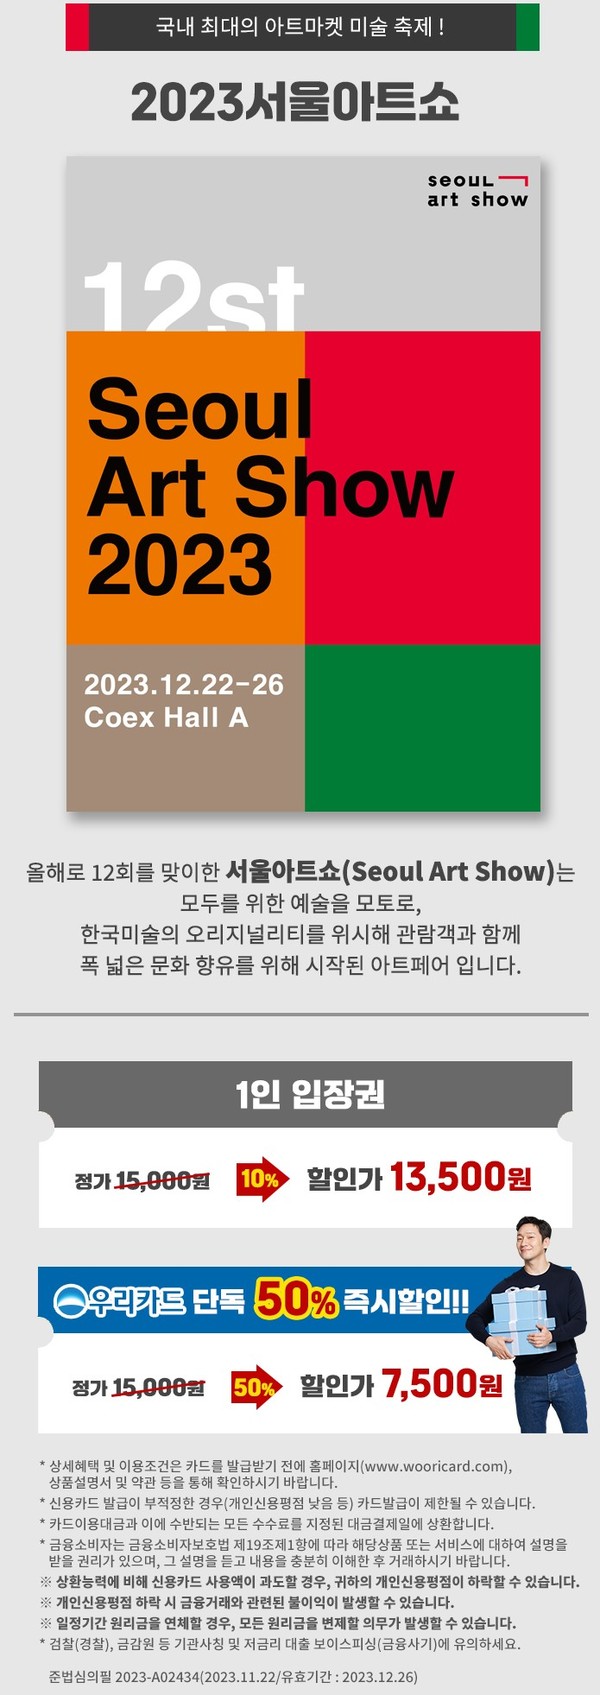 2023 서울 아트쇼 홍보 포스터 (사진: 우리카드 제공)